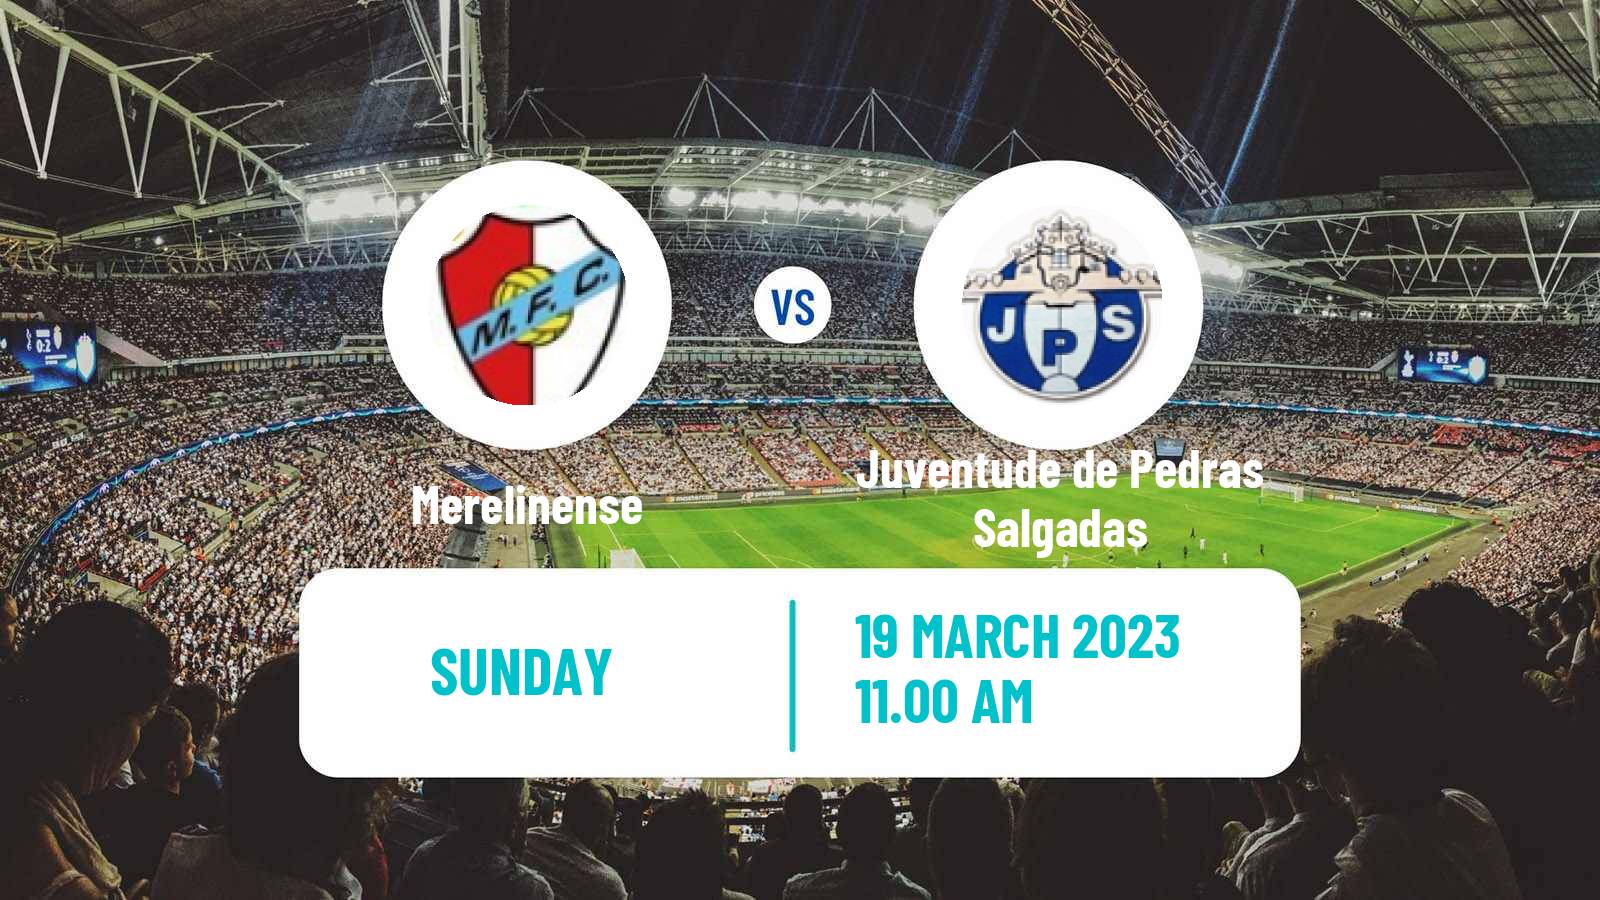 Soccer Campeonato de Portugal Merelinense - Juventude de Pedras Salgadas